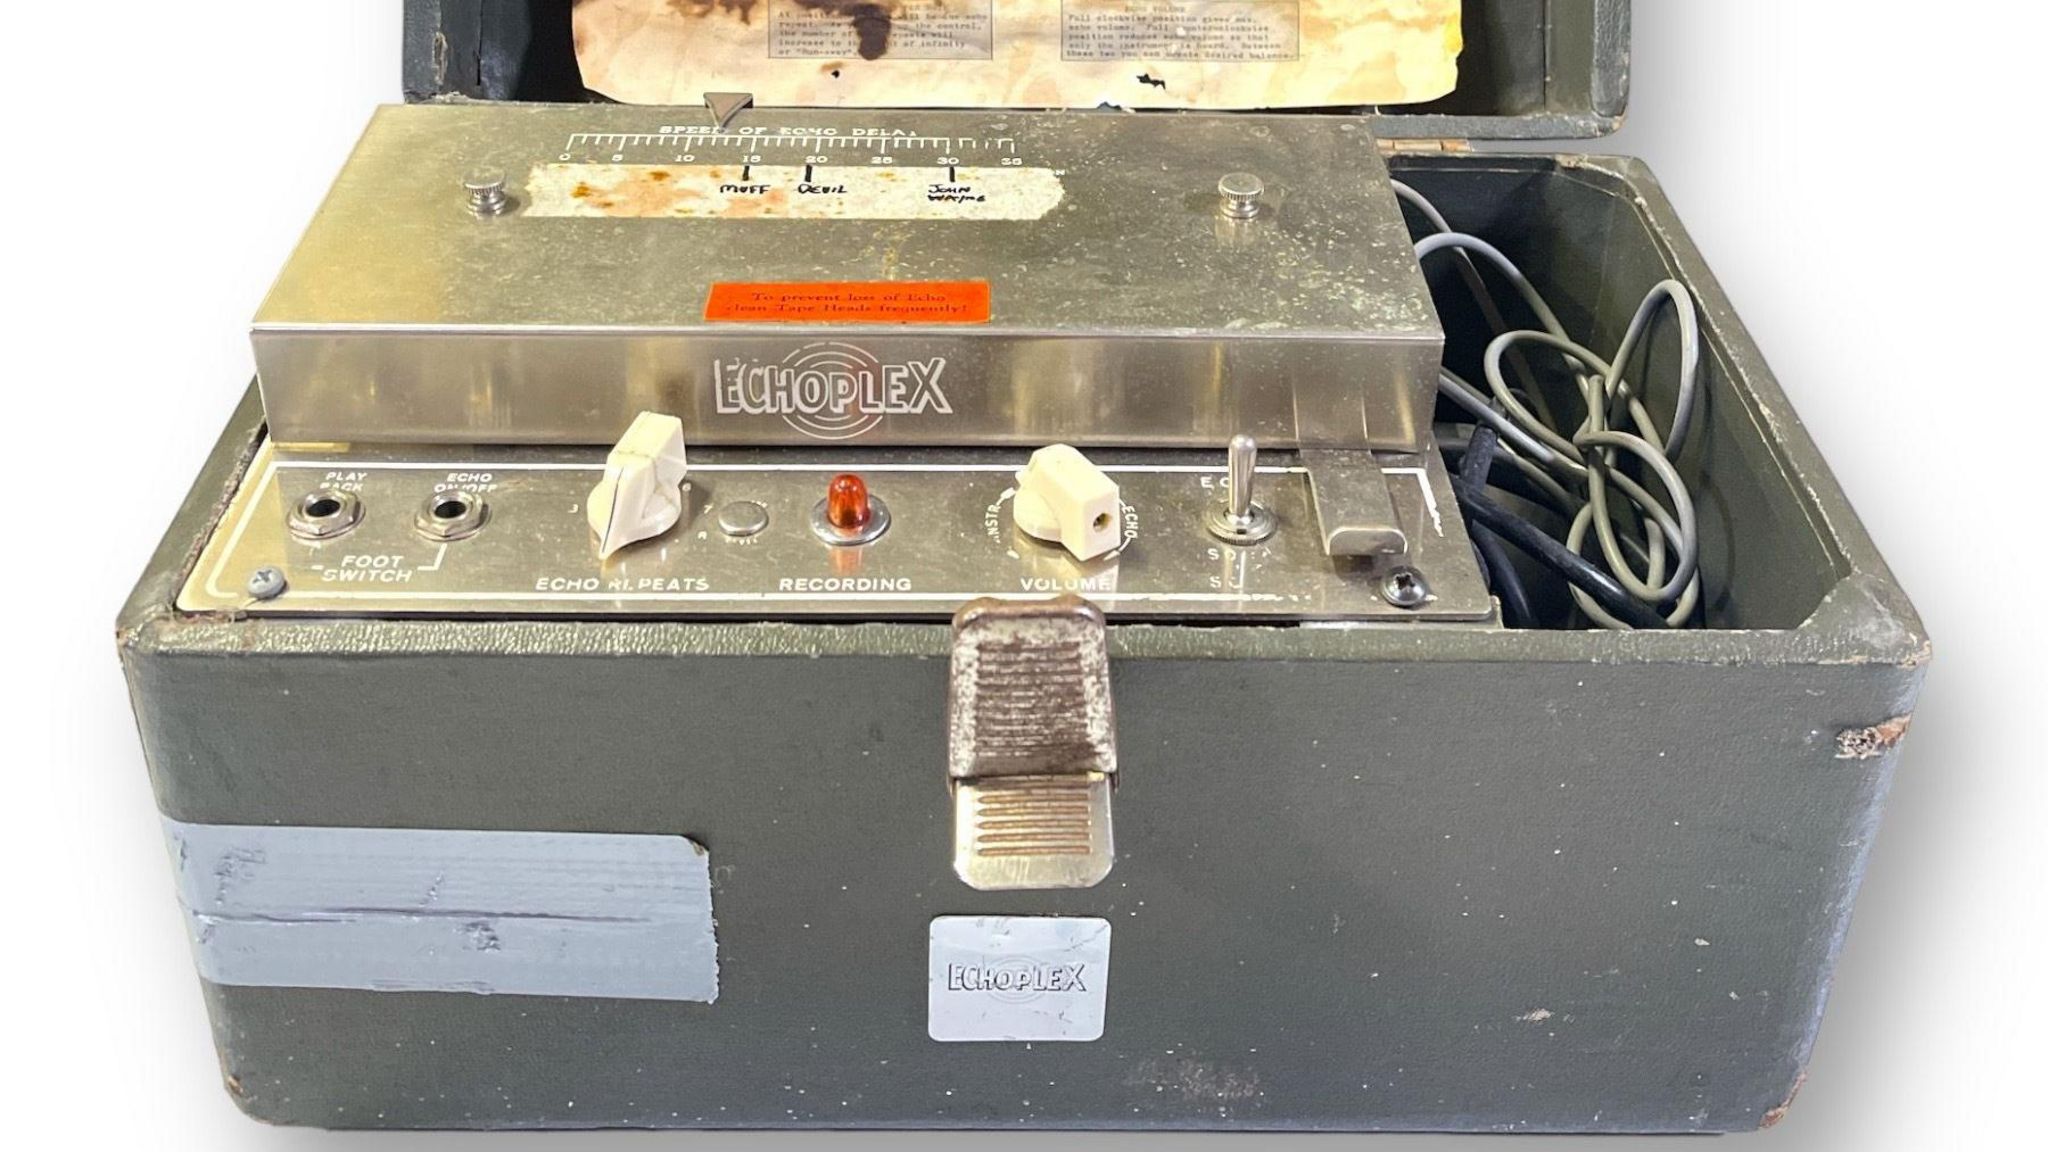 John Martyn's Echoplex amplifier